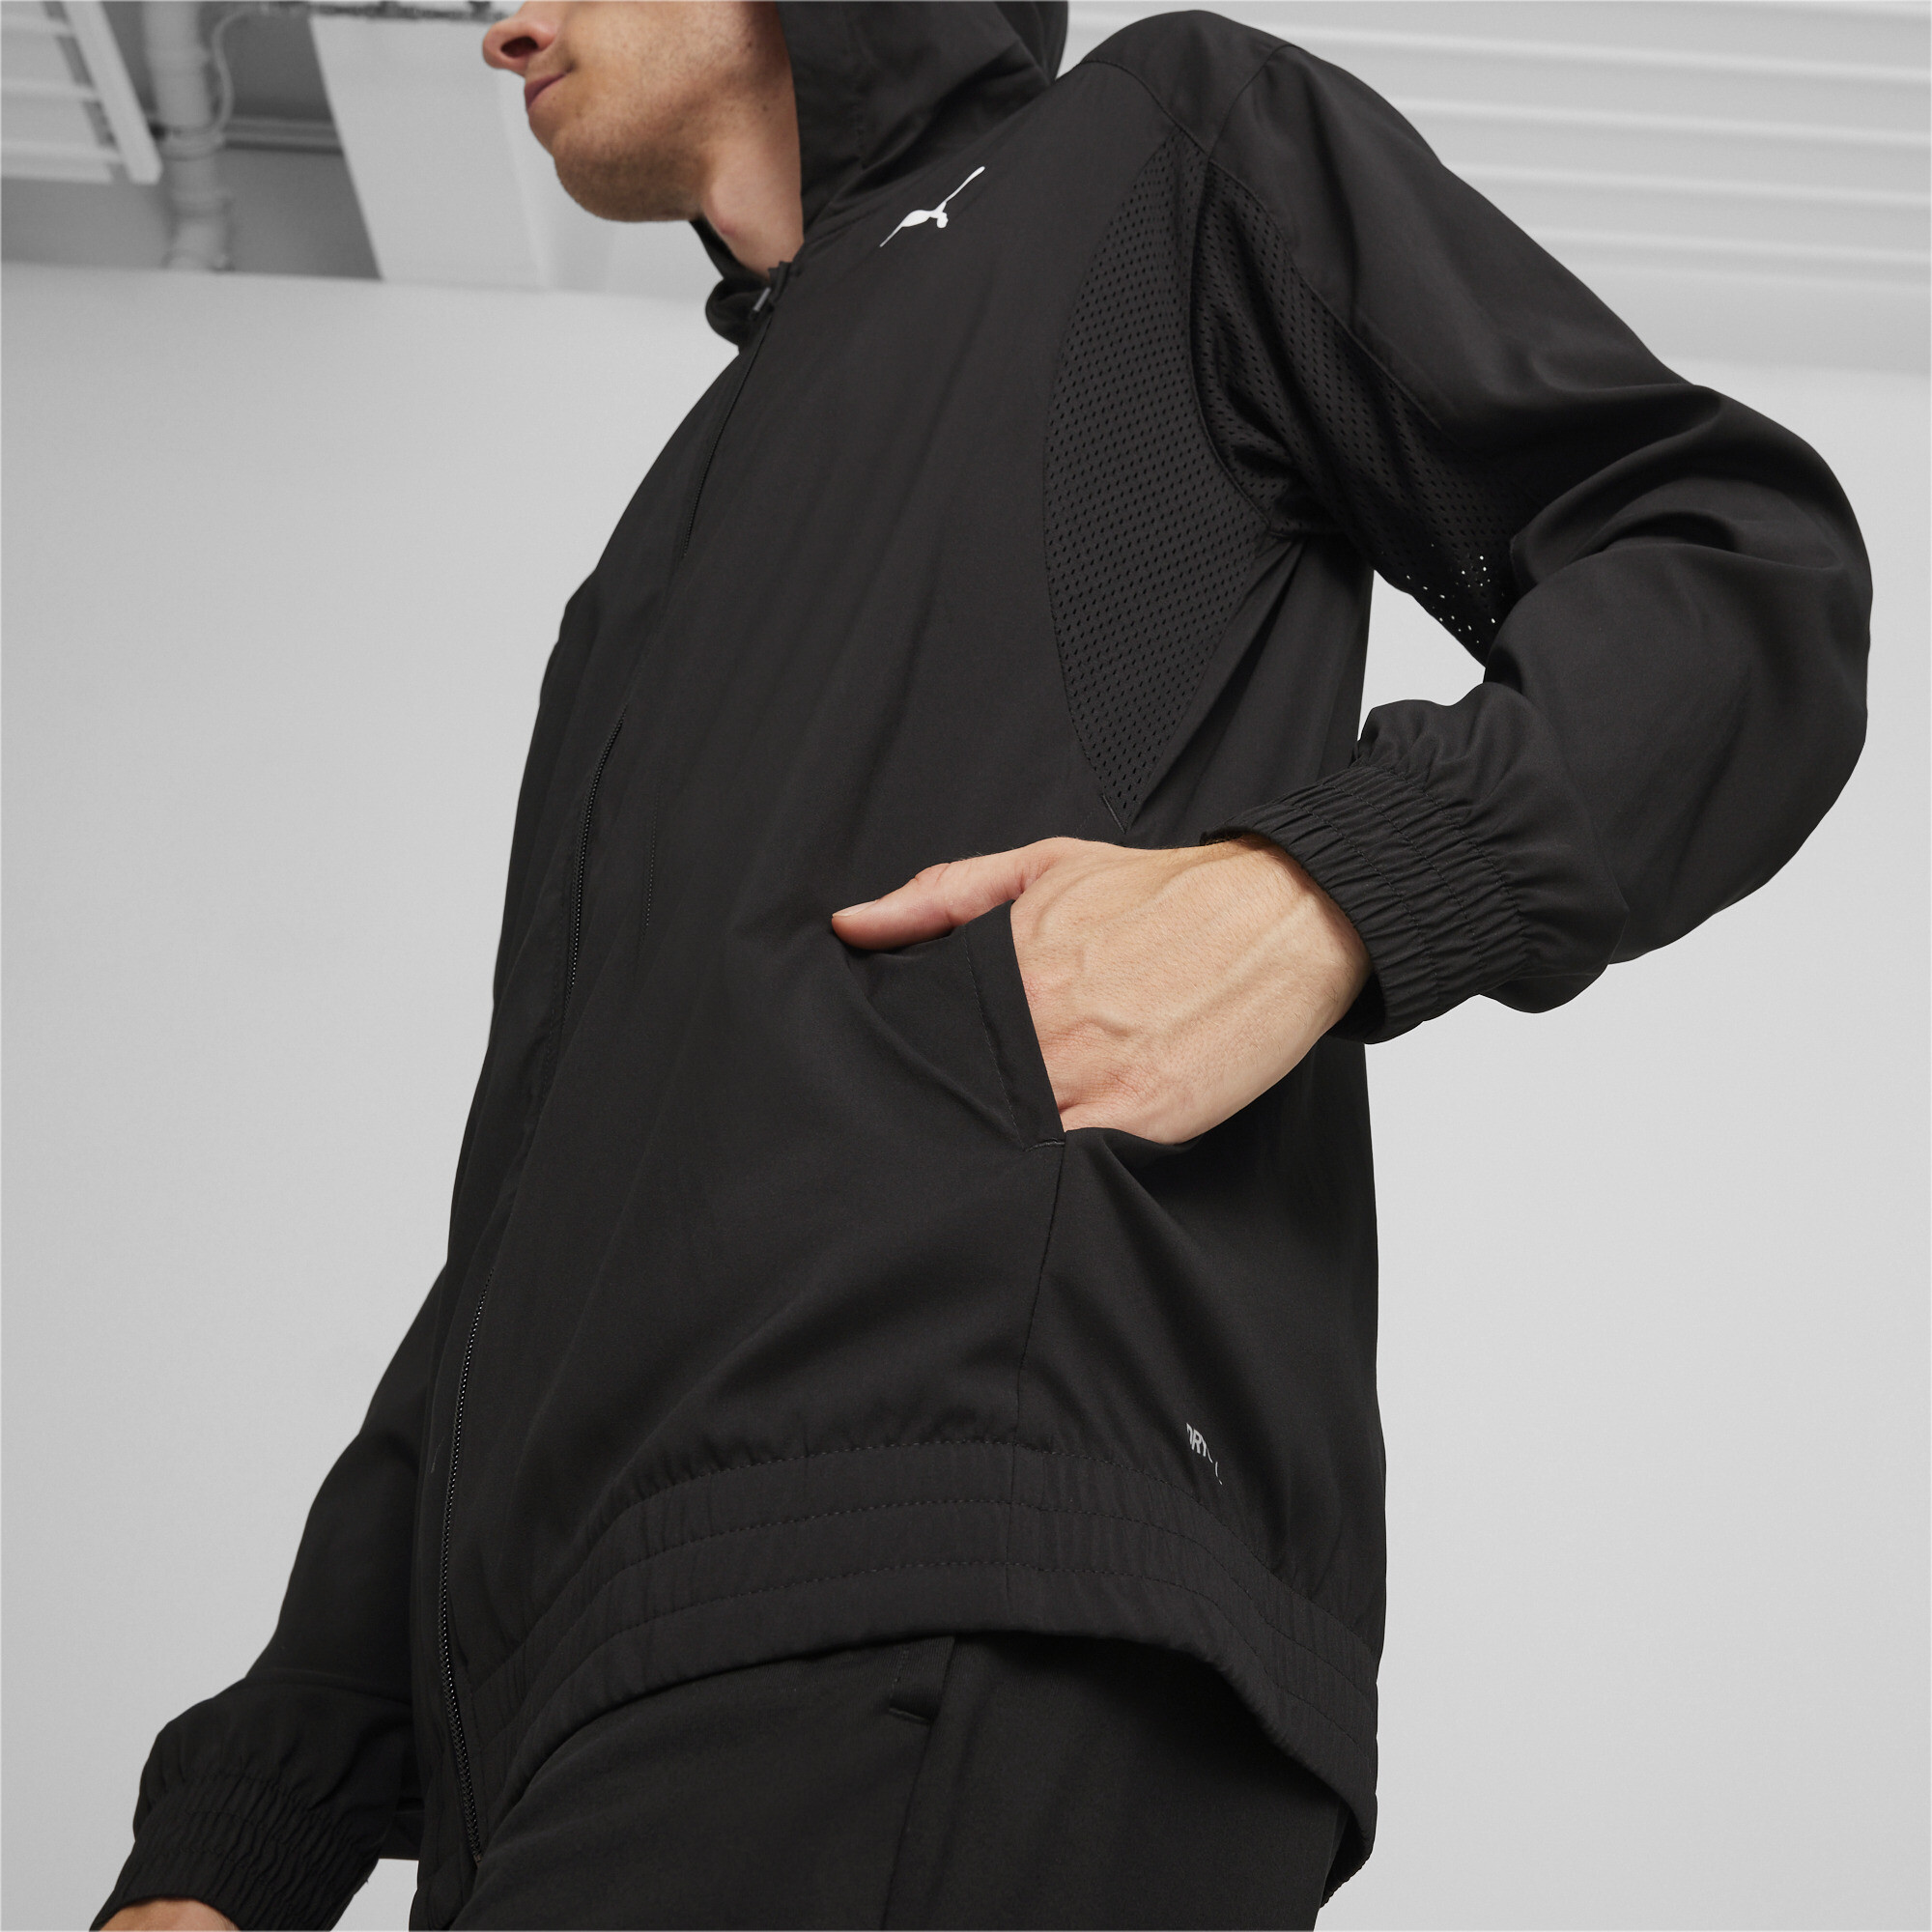 Men's PUMA FIT Woven Full-zip Jacket In Black, Size XL